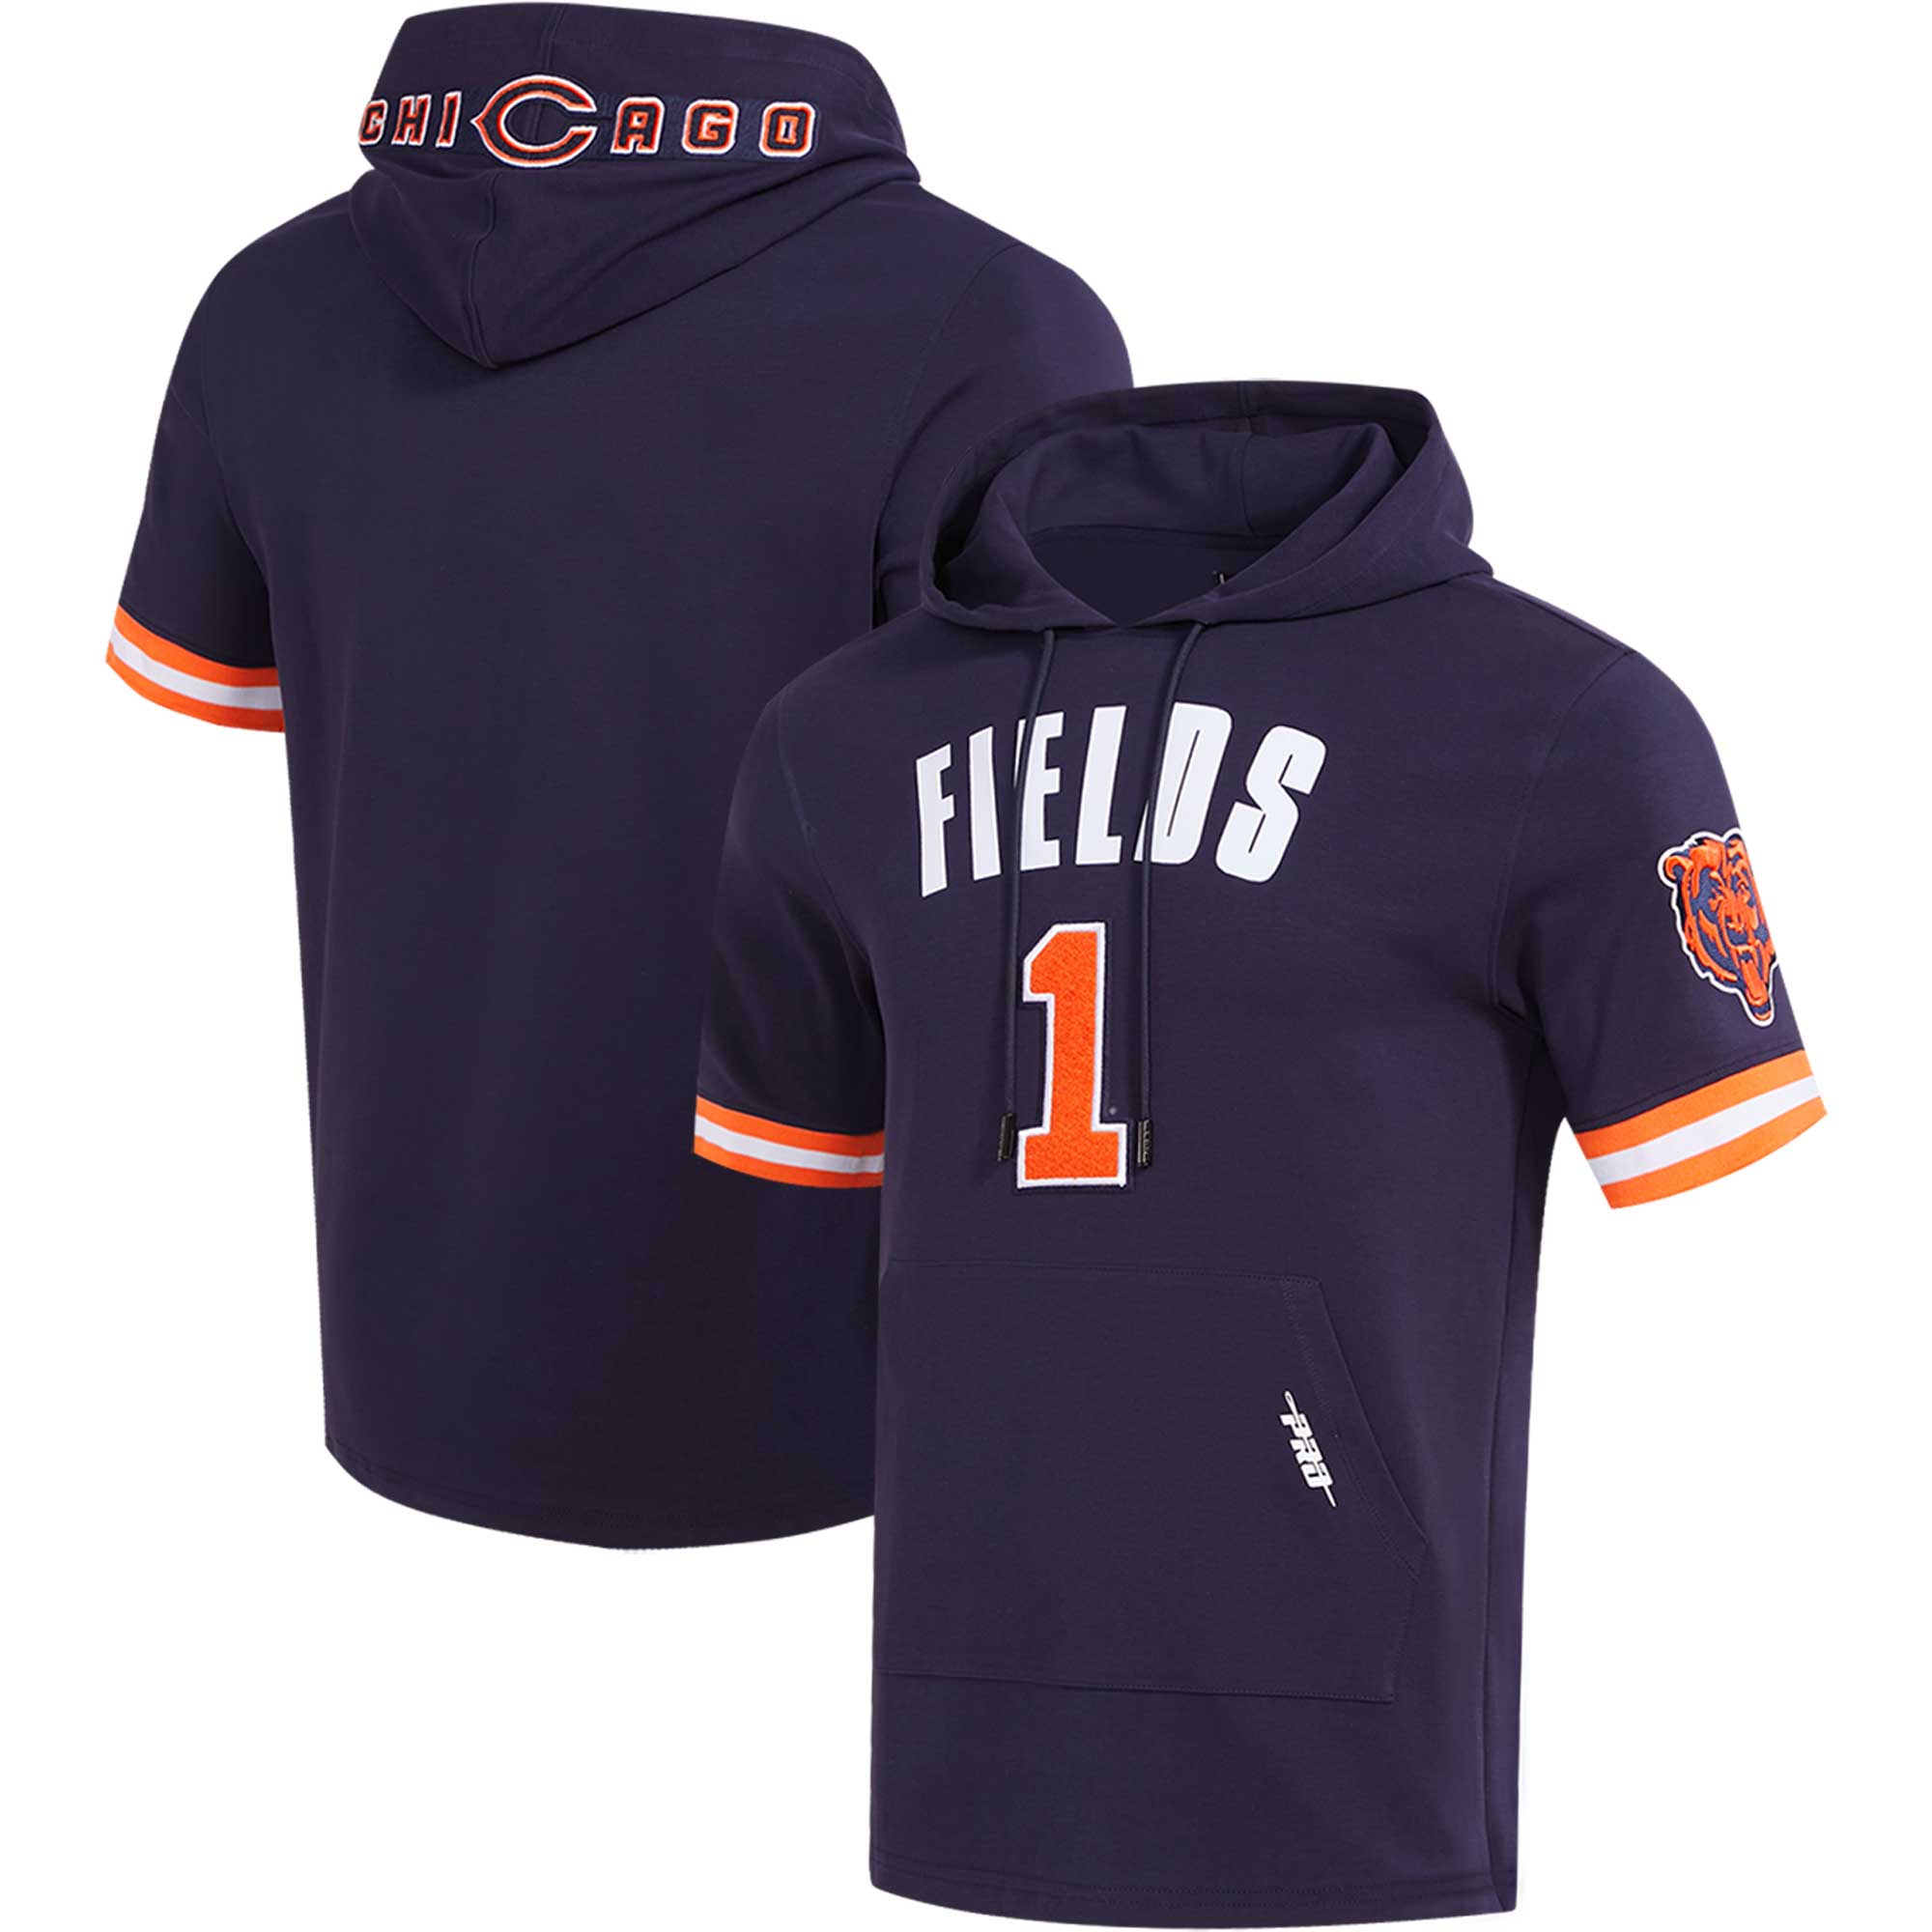 Herren Pro Standard Justin Fields Navy Chicago Bears Spielername & Nummer Kapuzenpullover T-Shirt